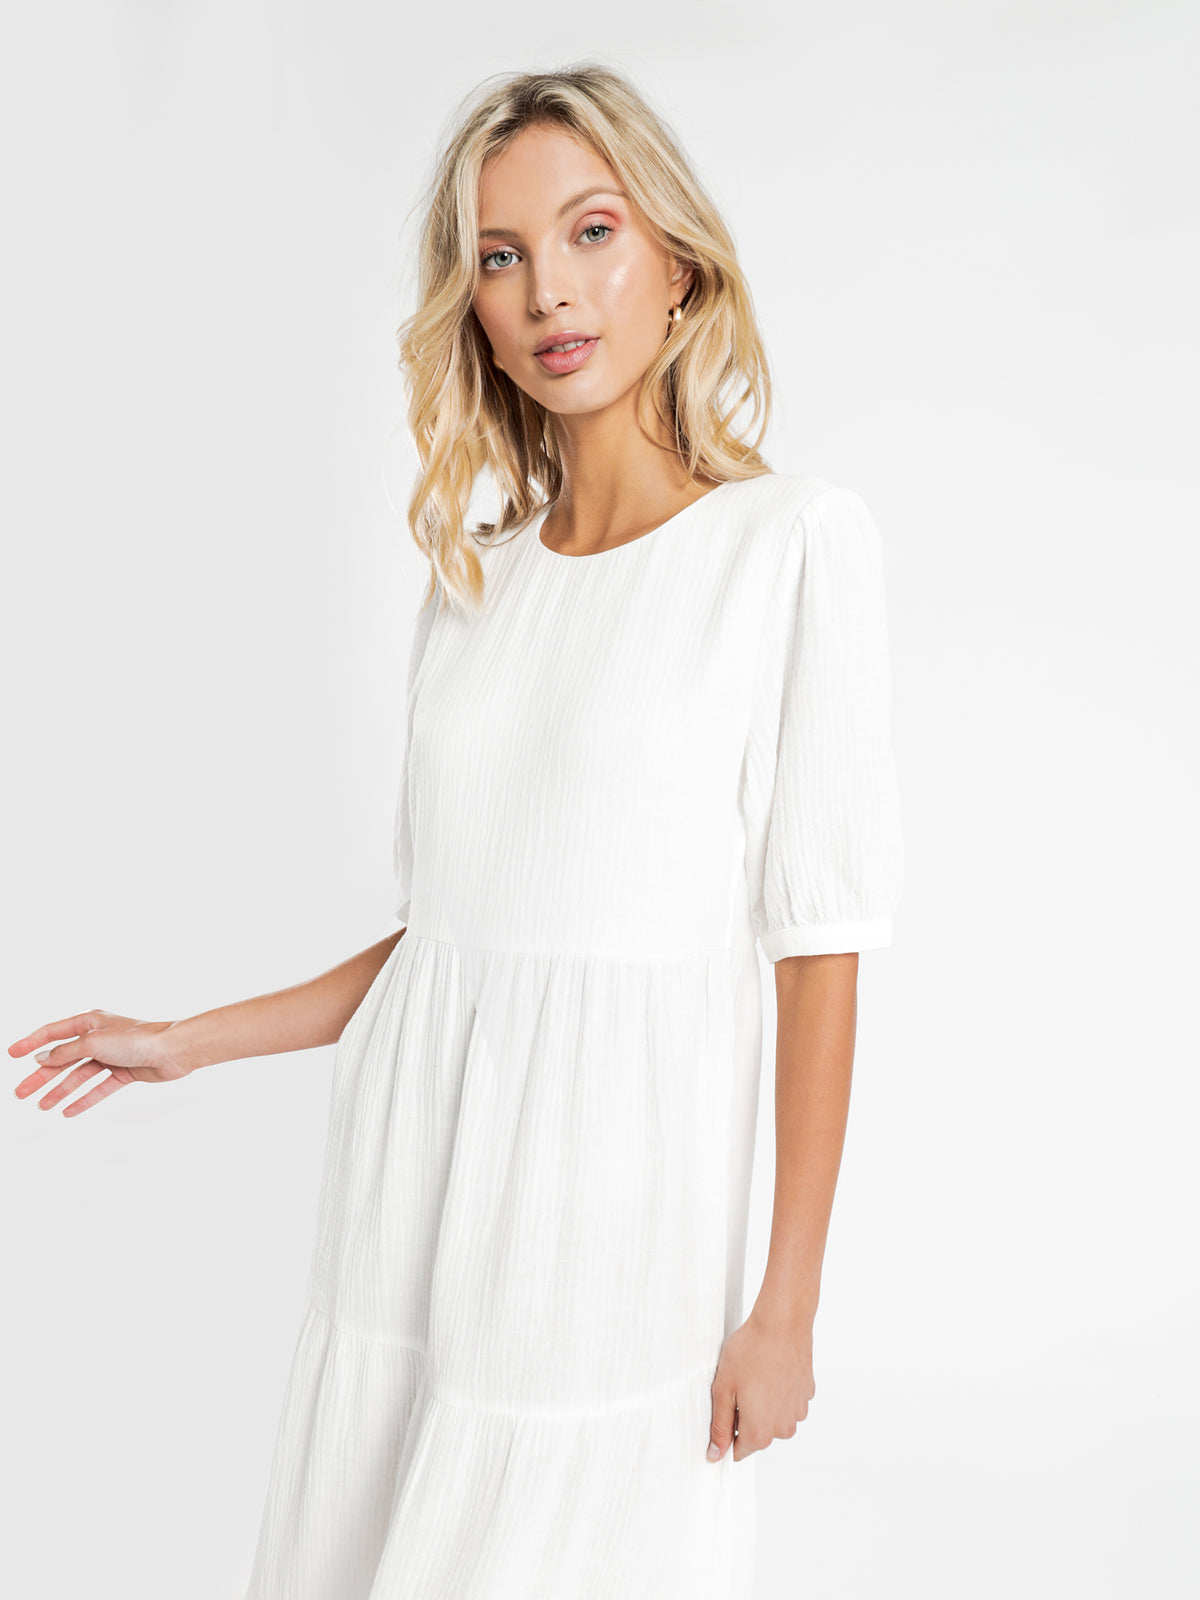 Verona Tier Maxi Dress in White